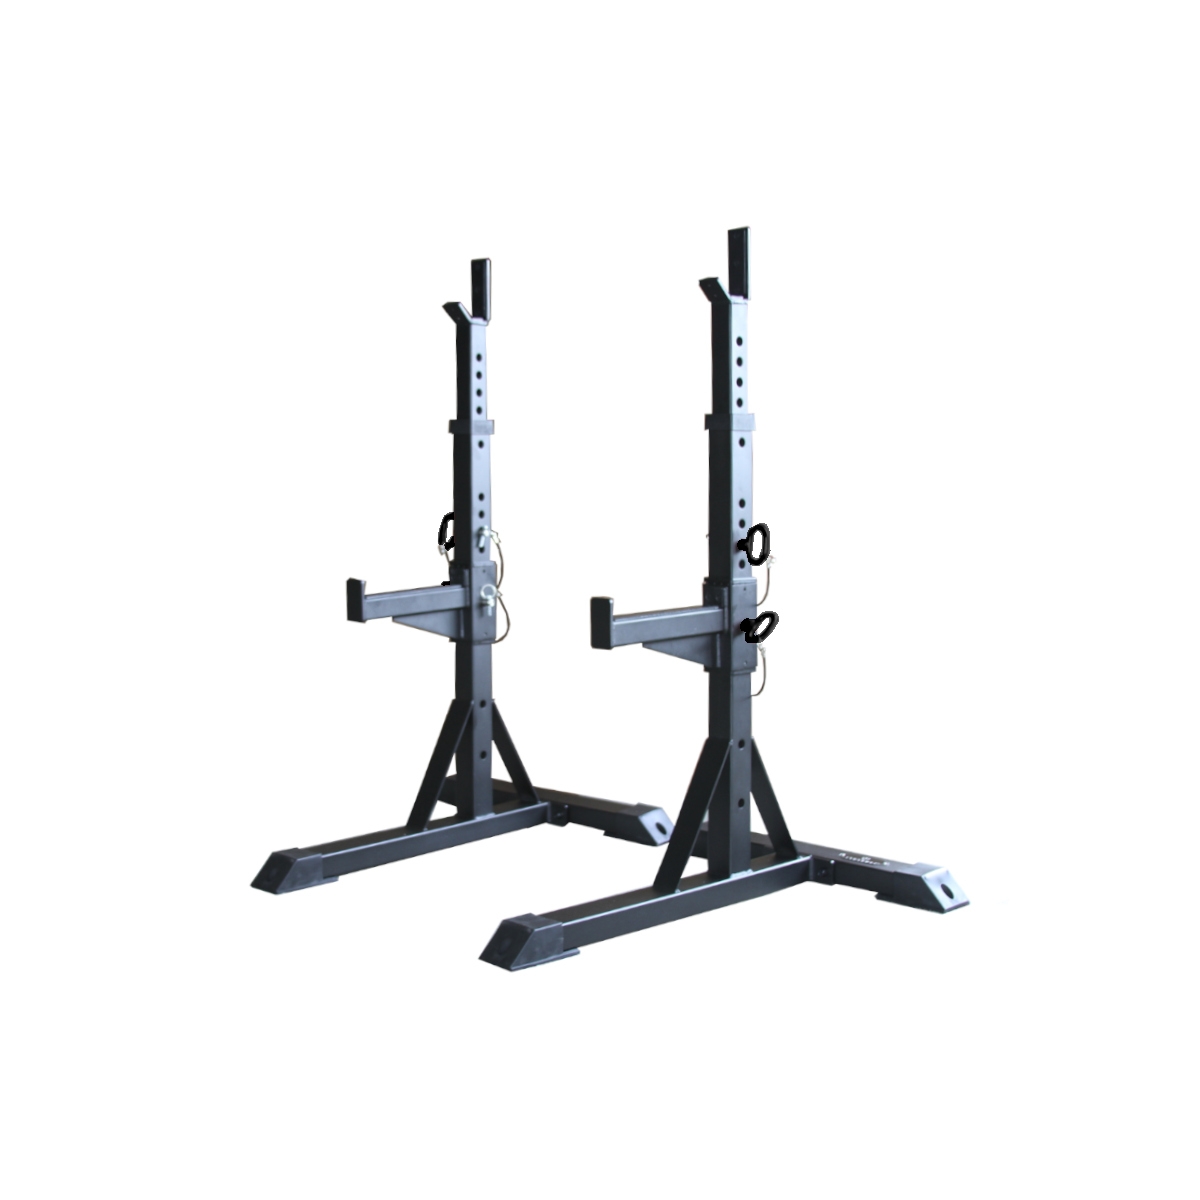 Paradigm Fitness Equipment - Squat Stands